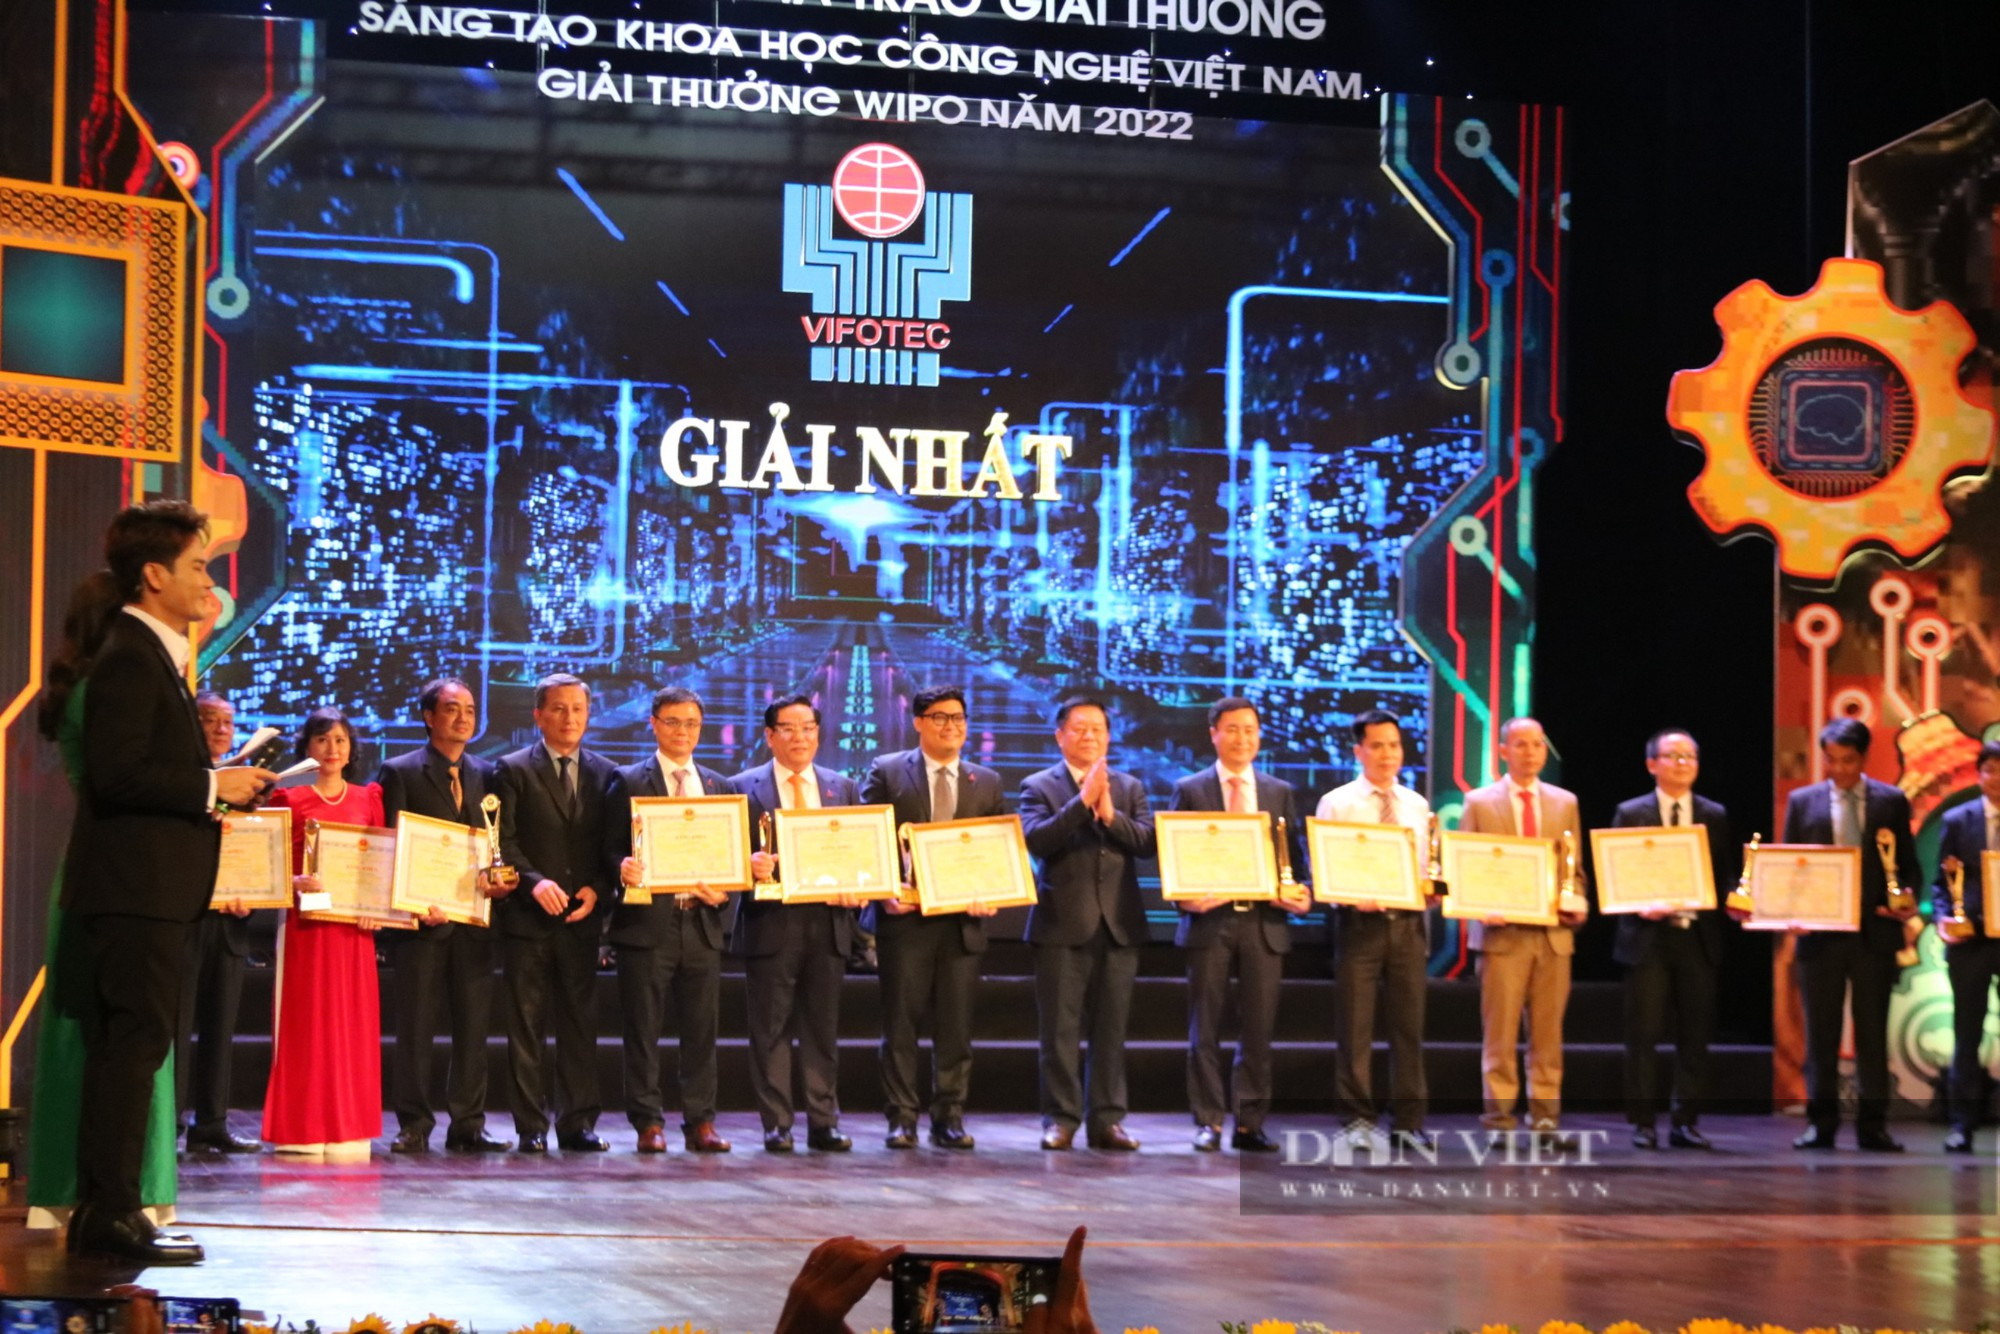 Tôn vinh 43 công trình xuất sắc nhận giải thưởng Sáng tạo khoa học công nghệ Việt Nam 2022 - Ảnh 4.